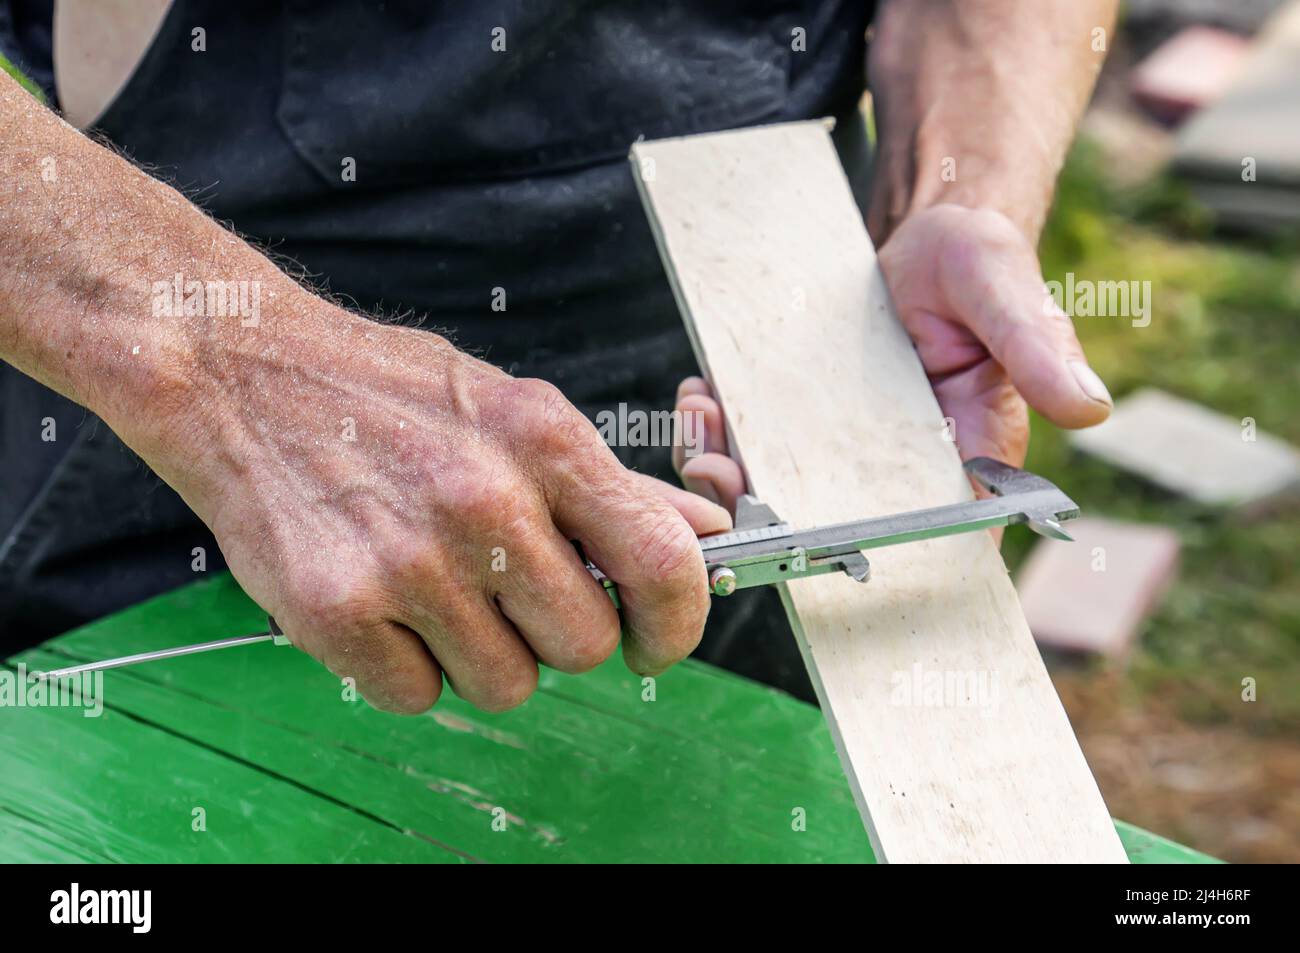 turner mide el tablero con una herramienta. mesa de sierra. Un carpintero  experimentado está listo para cortar una tabla de madera con una sierra  circular. Producción de mate de madera Fotografía de